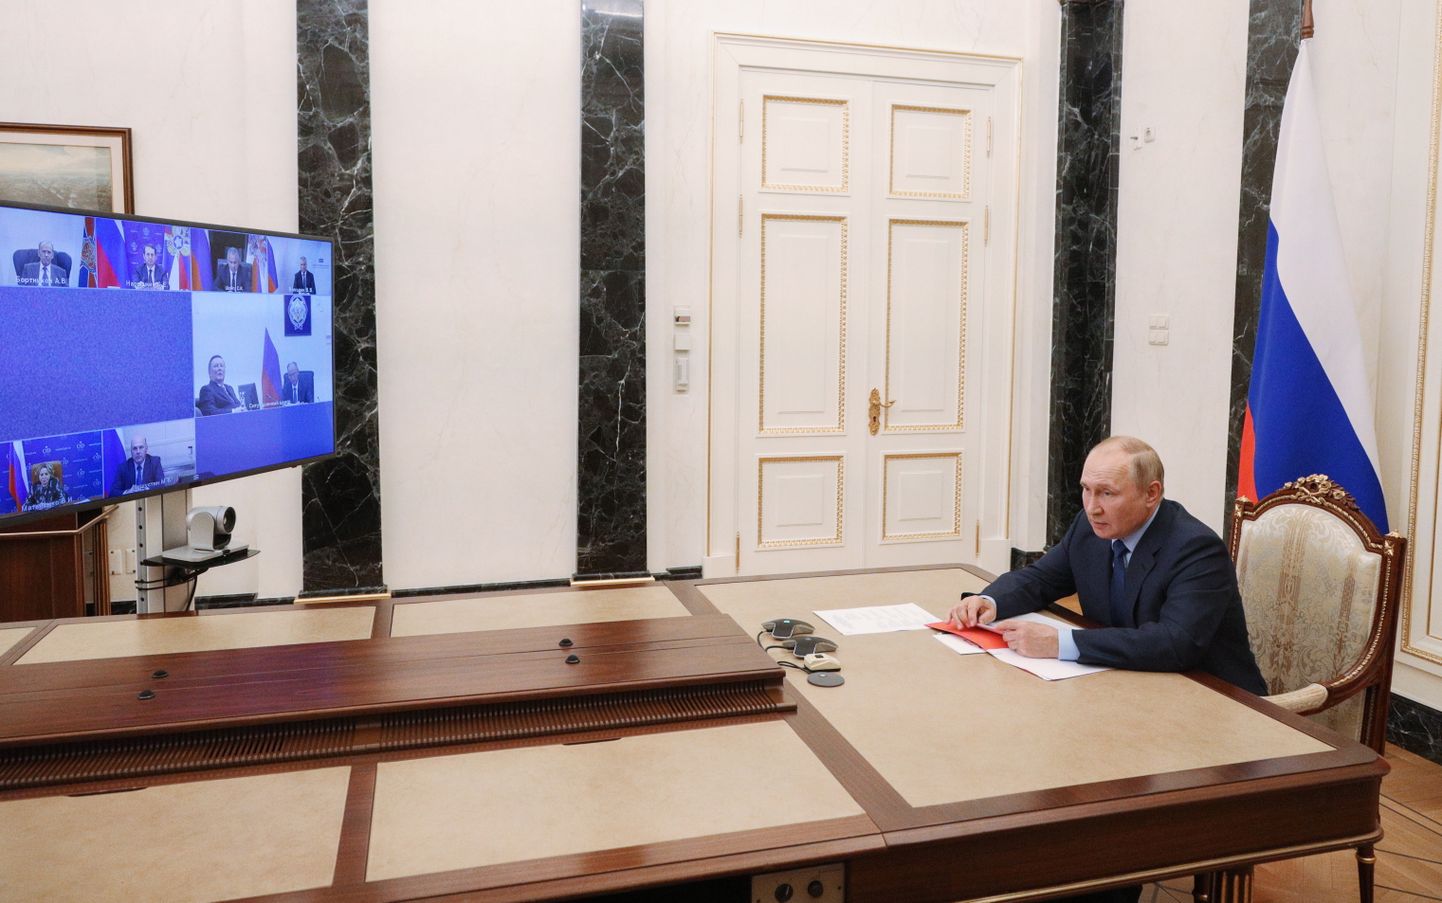 Venemaa president Vladimir Putin seisab majanduse halvema olukorra avalikustamise asemel selle varjamise teel